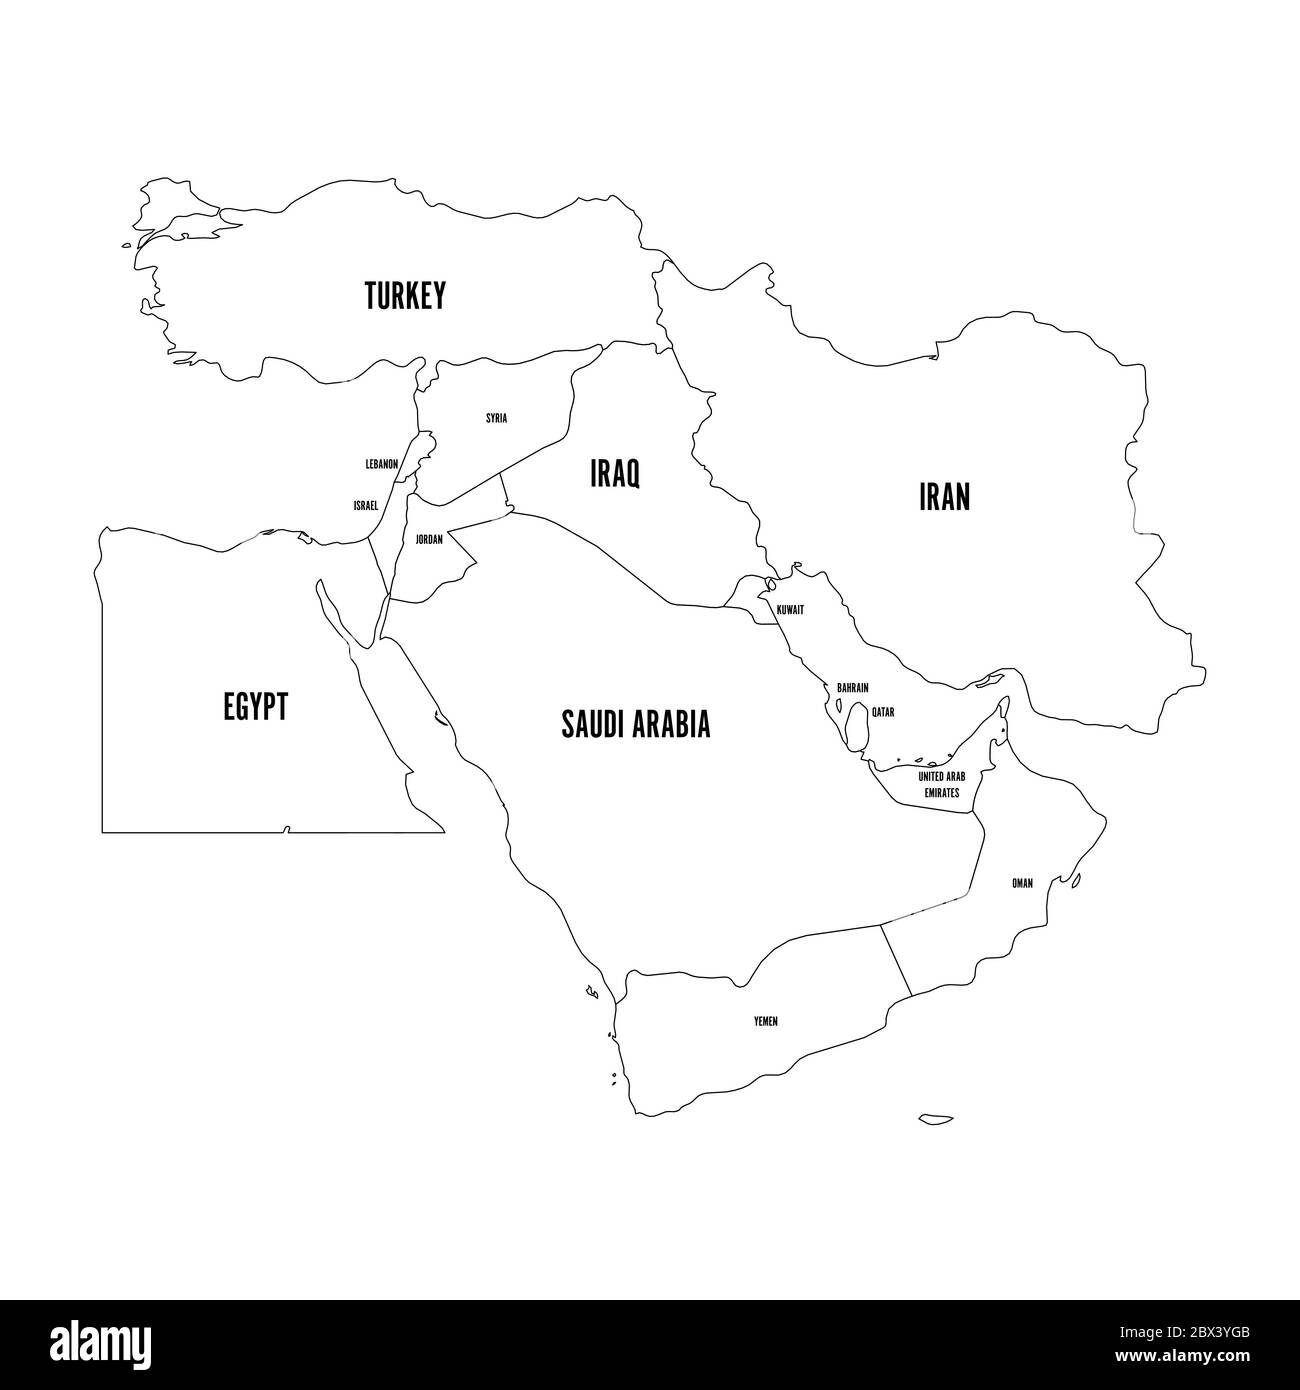 Politische Karte des Nahen Ostens oder des Nahen Ostens. Einfache flache Kontur Vektor-Ilustration. Stock Vektor